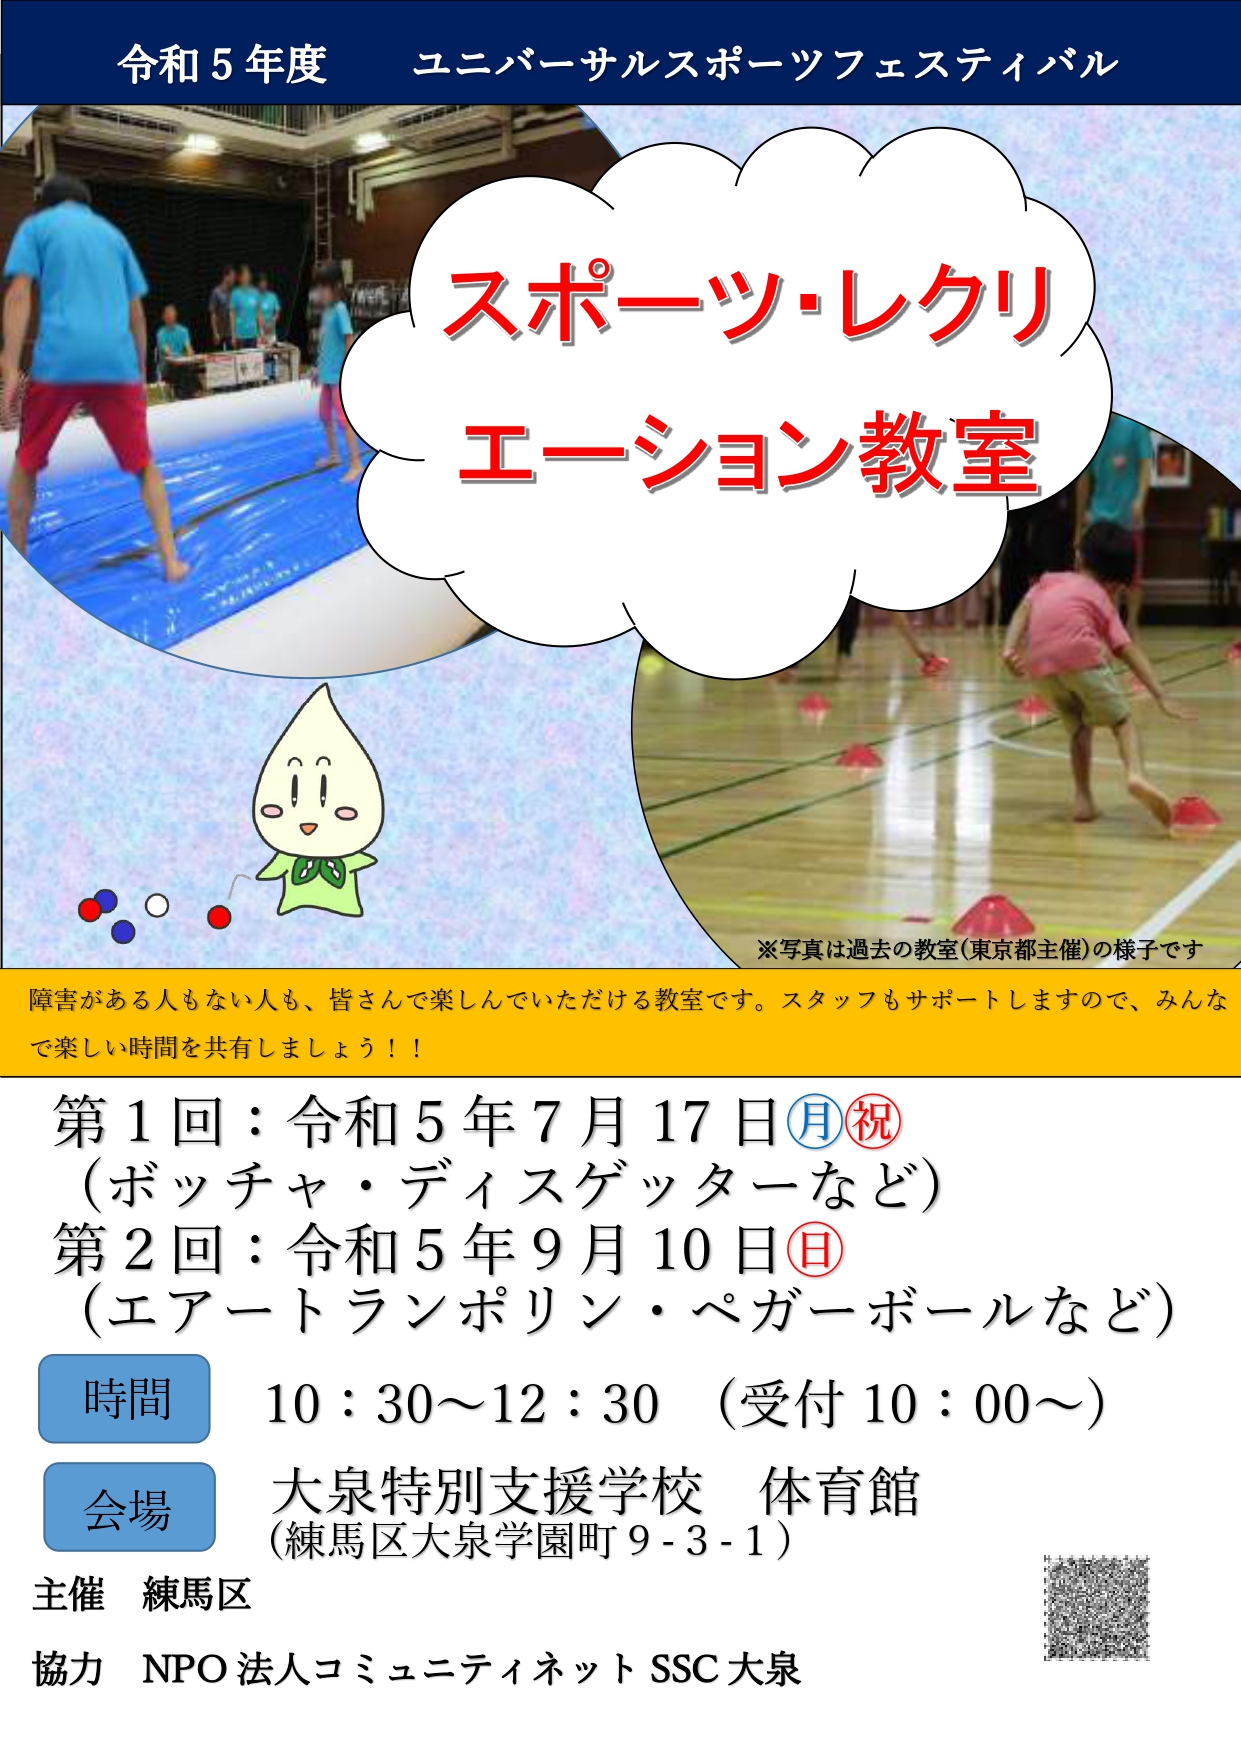 スポーツ・レクリエーション教室(練馬大泉)